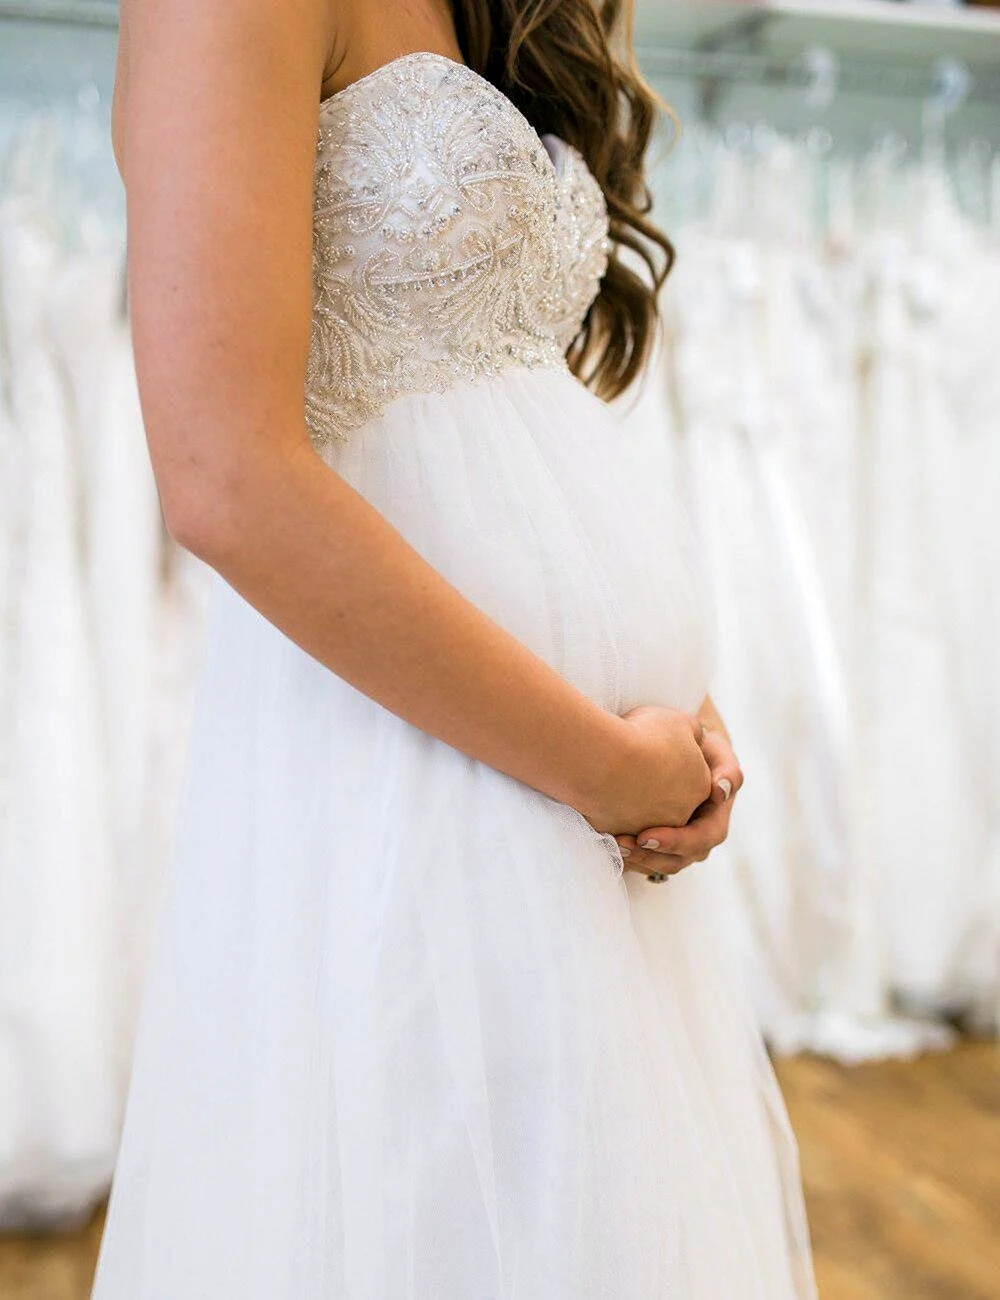 Свадебные платья для беременных